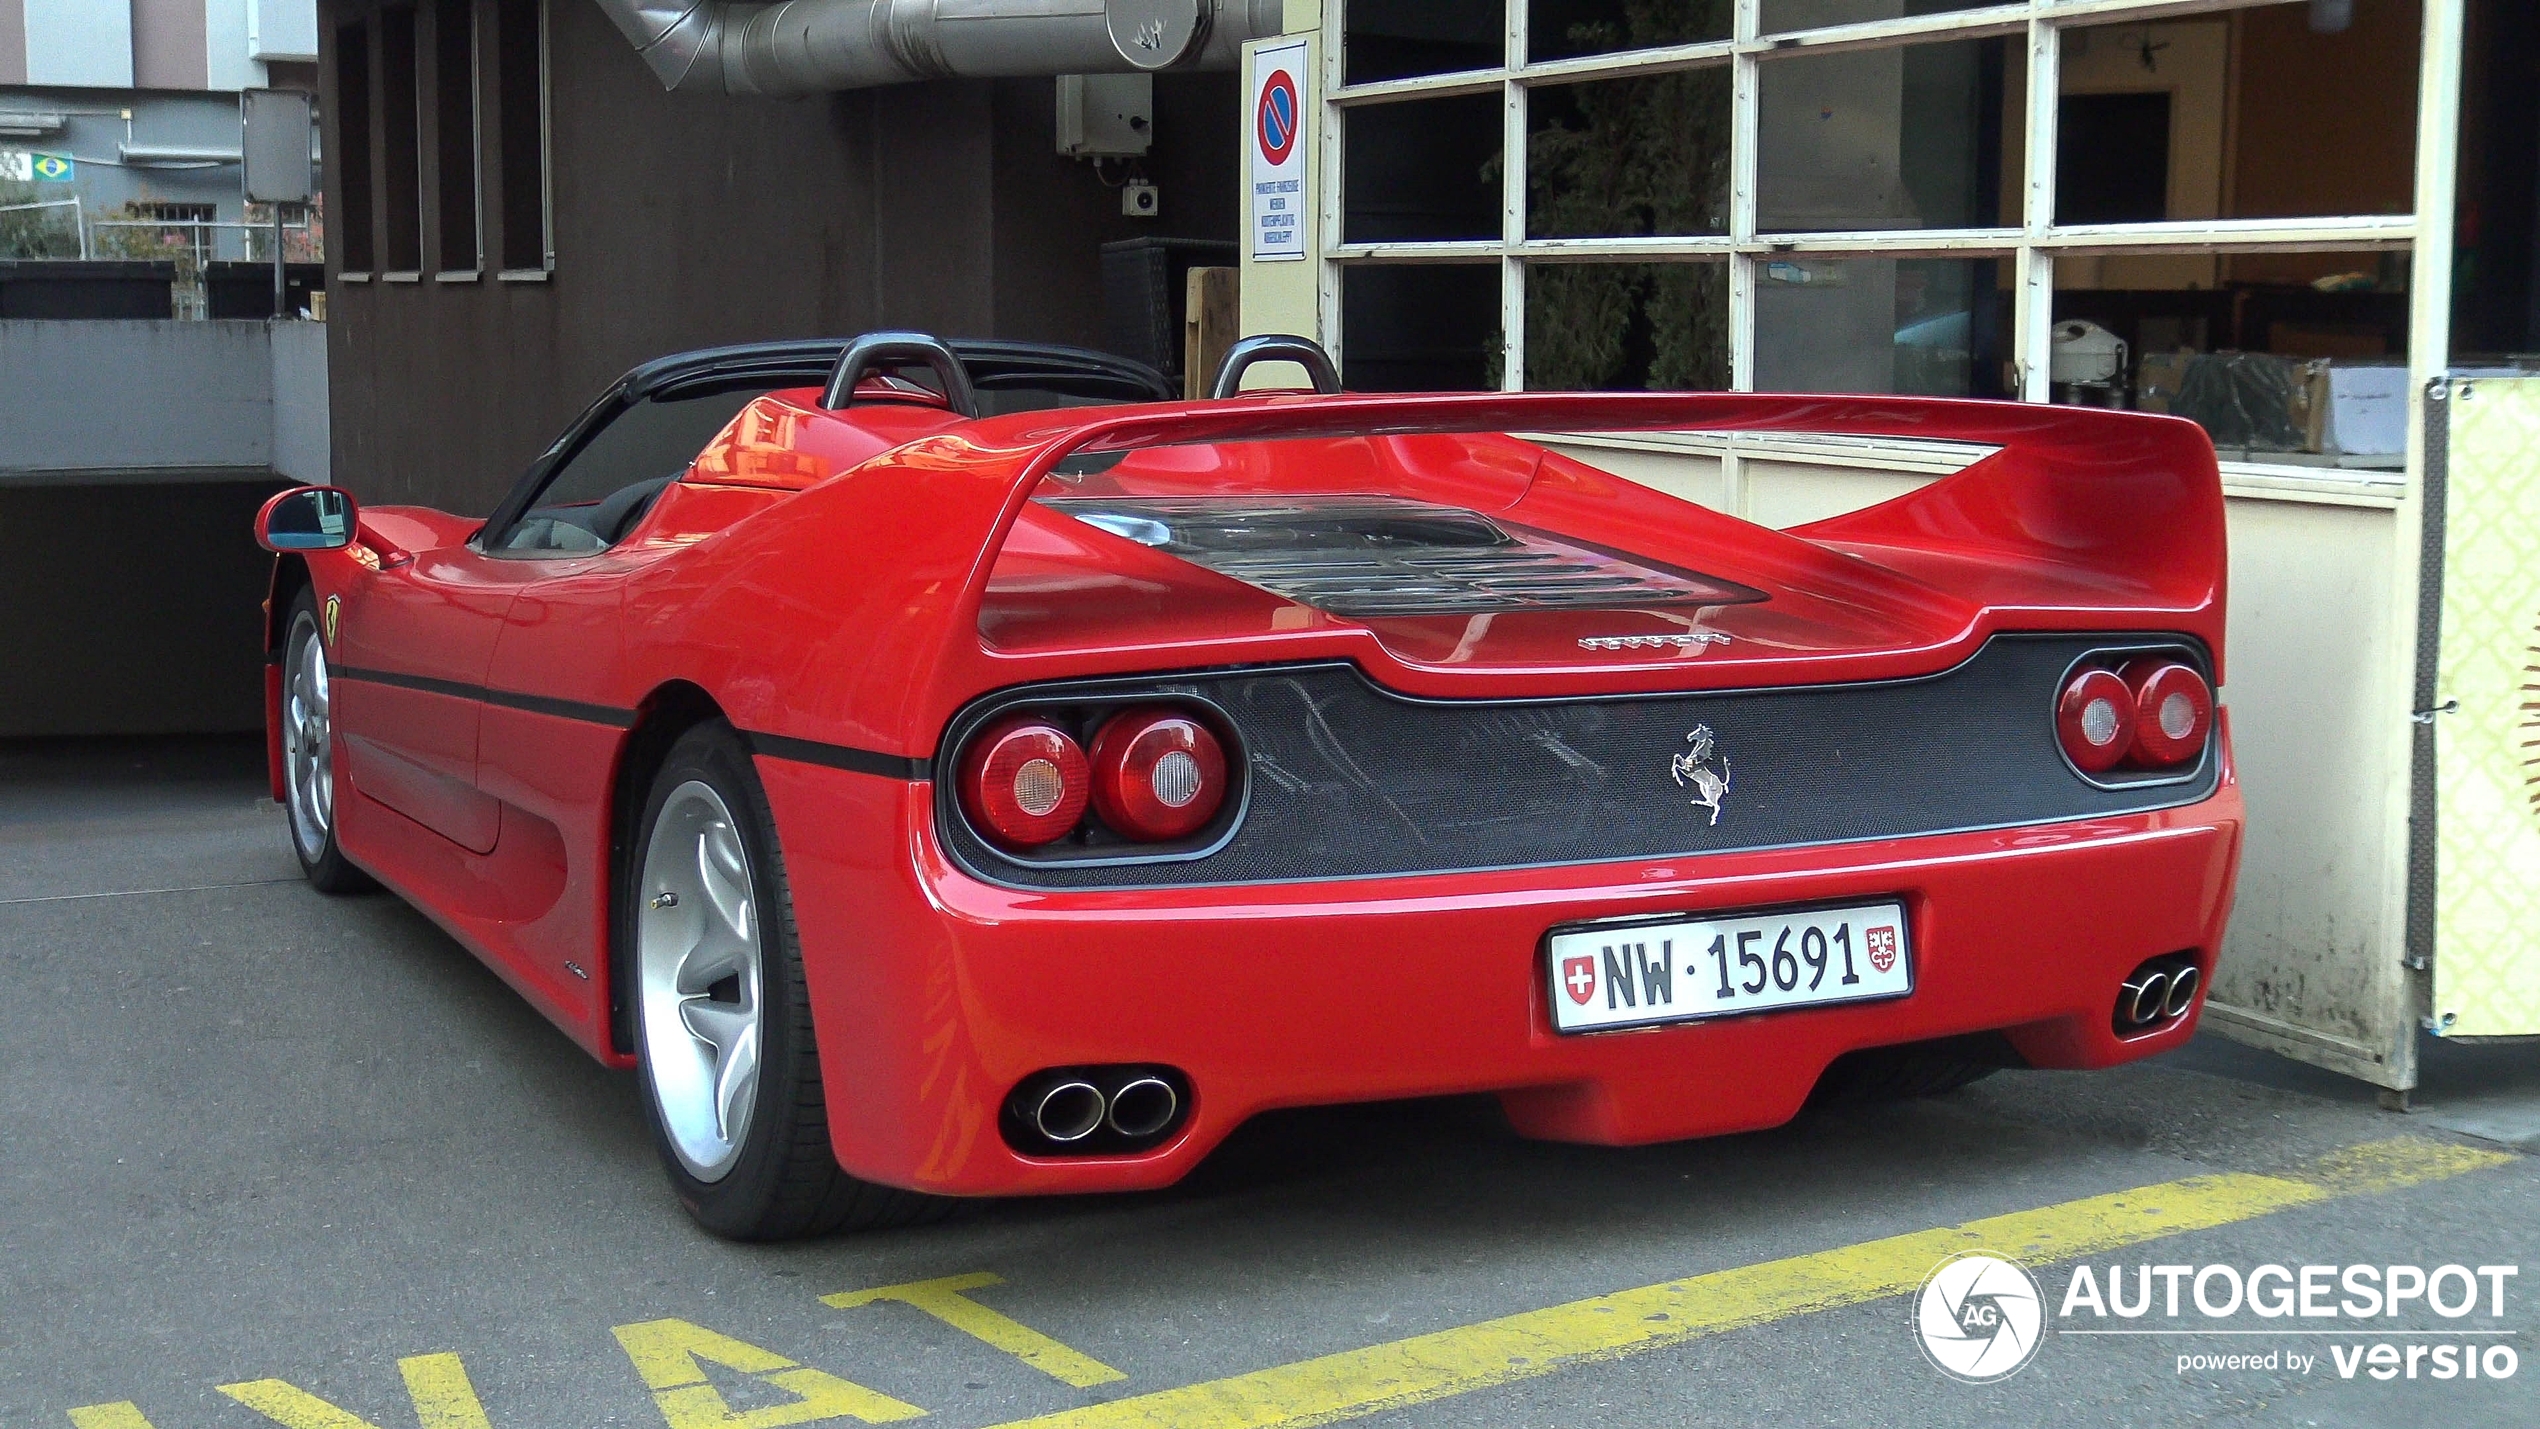 A Ferrari F50 shows up in Zürich